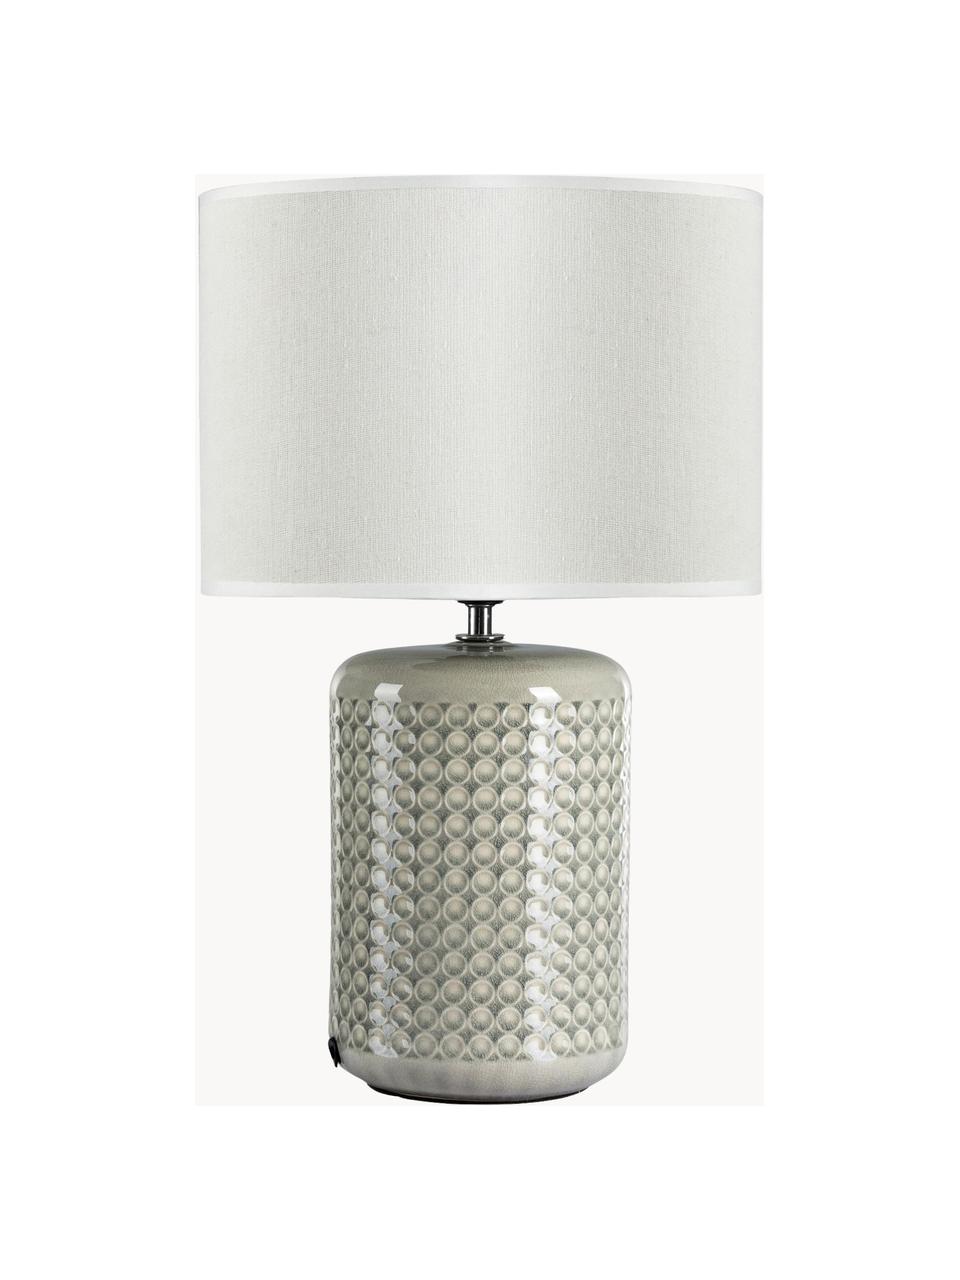 Tischlampe Go for Glowgau, Lampenschirm: Leinen, Lampenfuß: Keramik, Grüngrau, Weiß, Ø 25 x H 40 cm